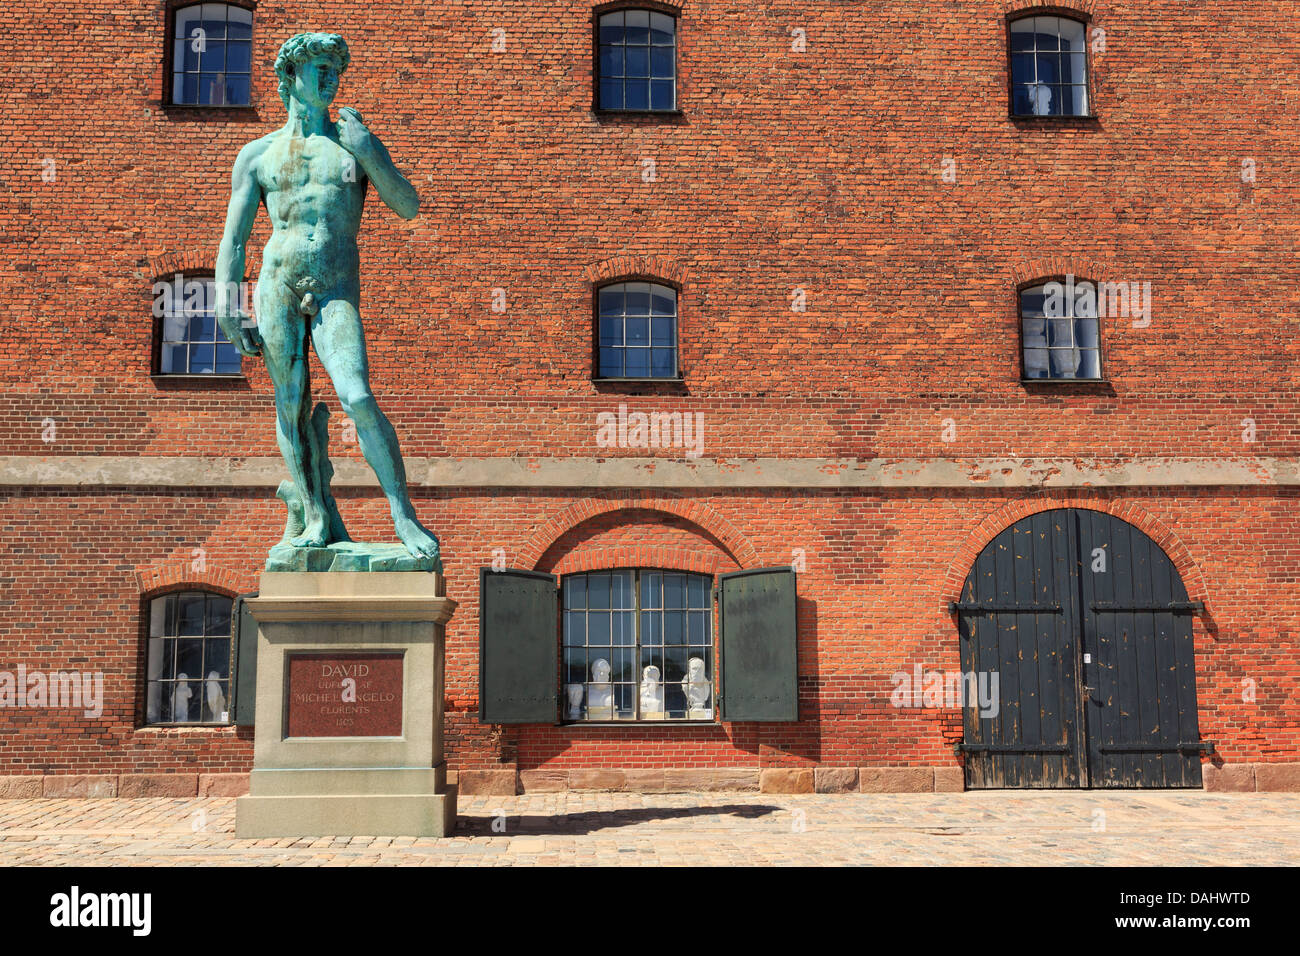 Réplique de la statue de David de Michel-Ange à l'extérieur de l'édifice Royal Collection en fonte sur Langelinie Danemark Copenhague Promenade Banque D'Images